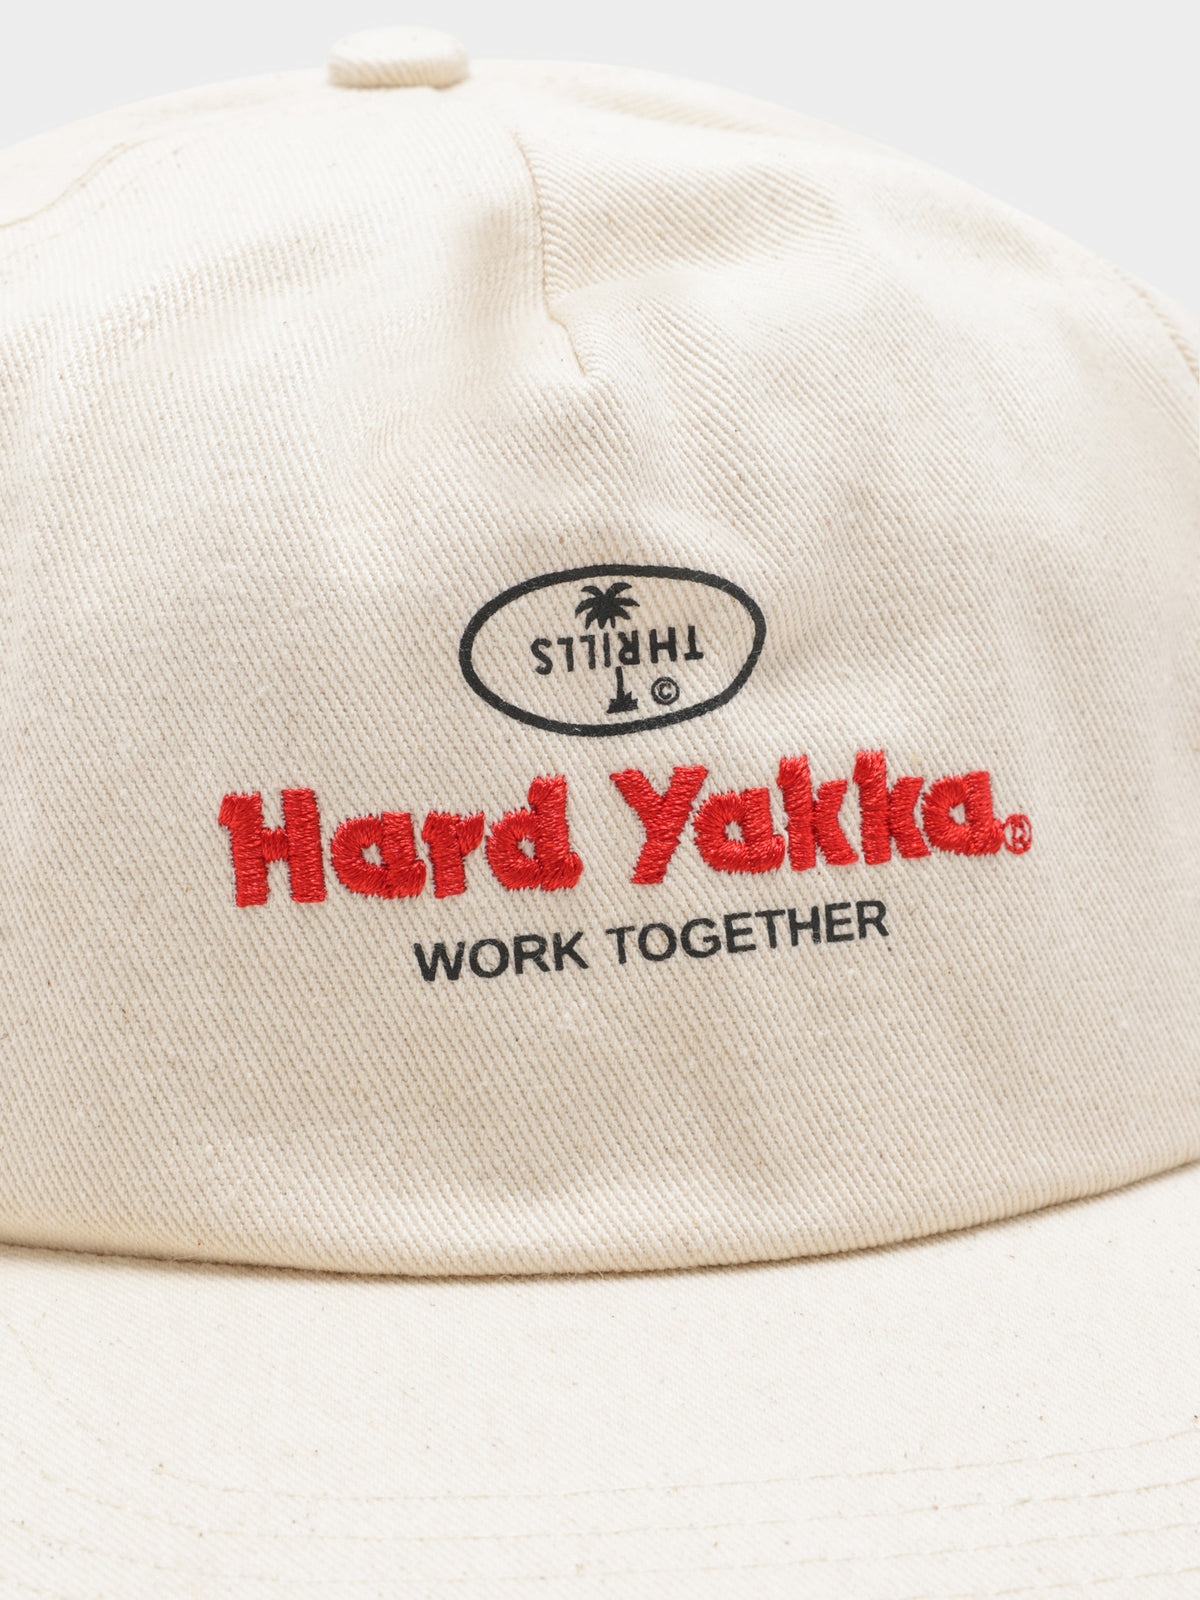 Hard Yakka x Thrills Worker Cap in White